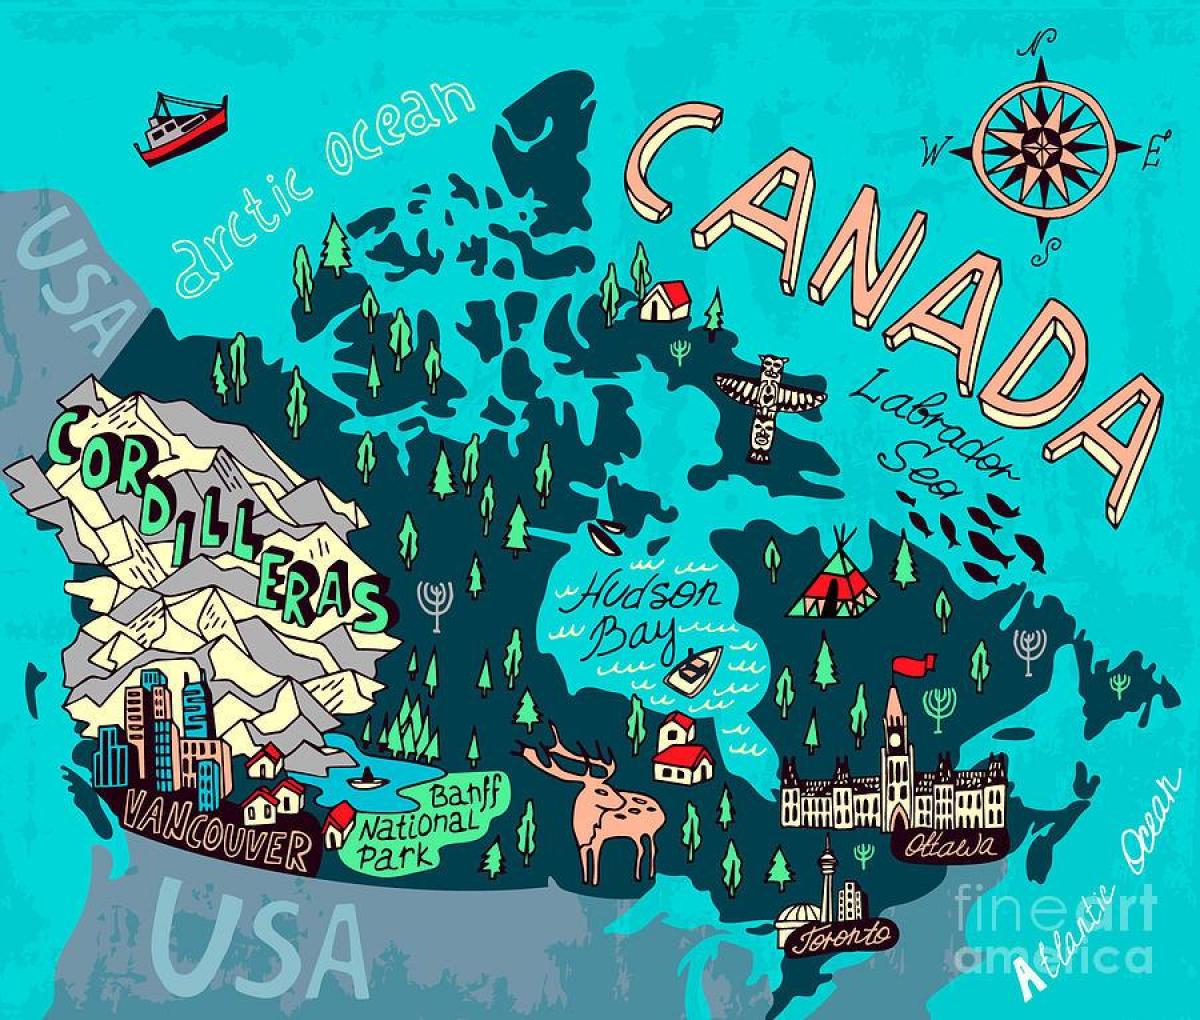 خريطة مناطق الجذب السياحي في كندا